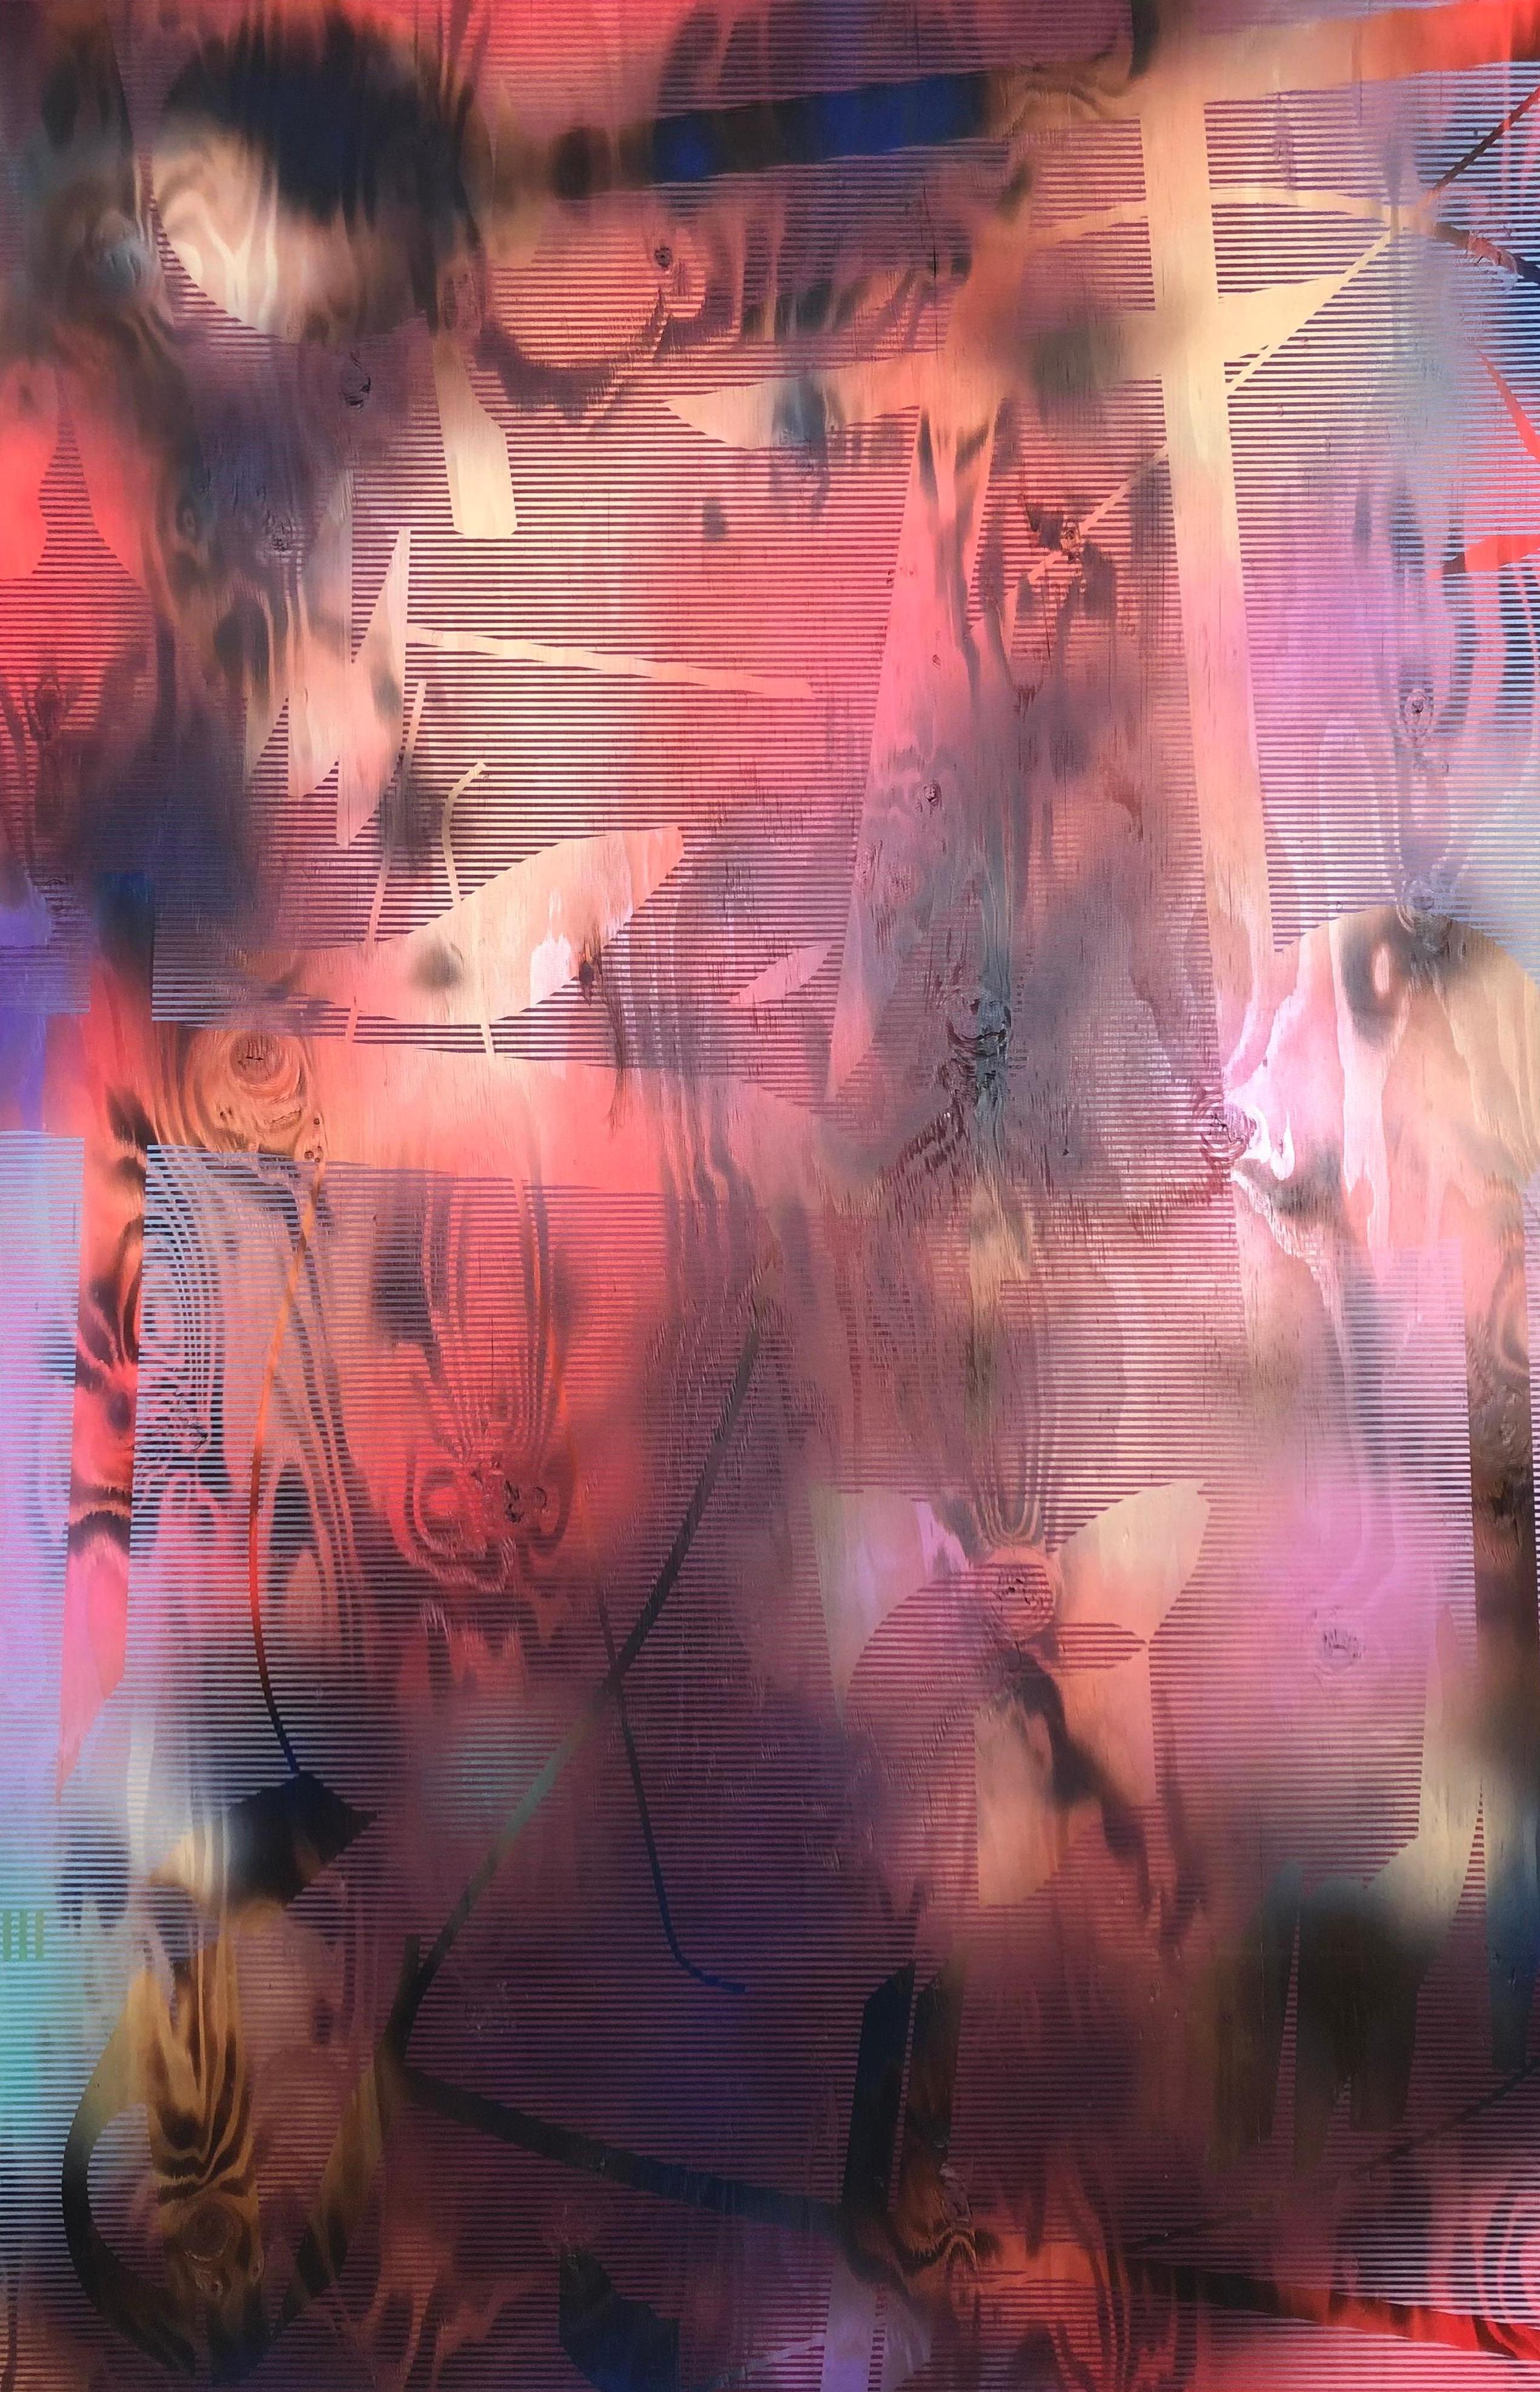 Abstract Painting Melisa Taylor Metzger - Turbulence 